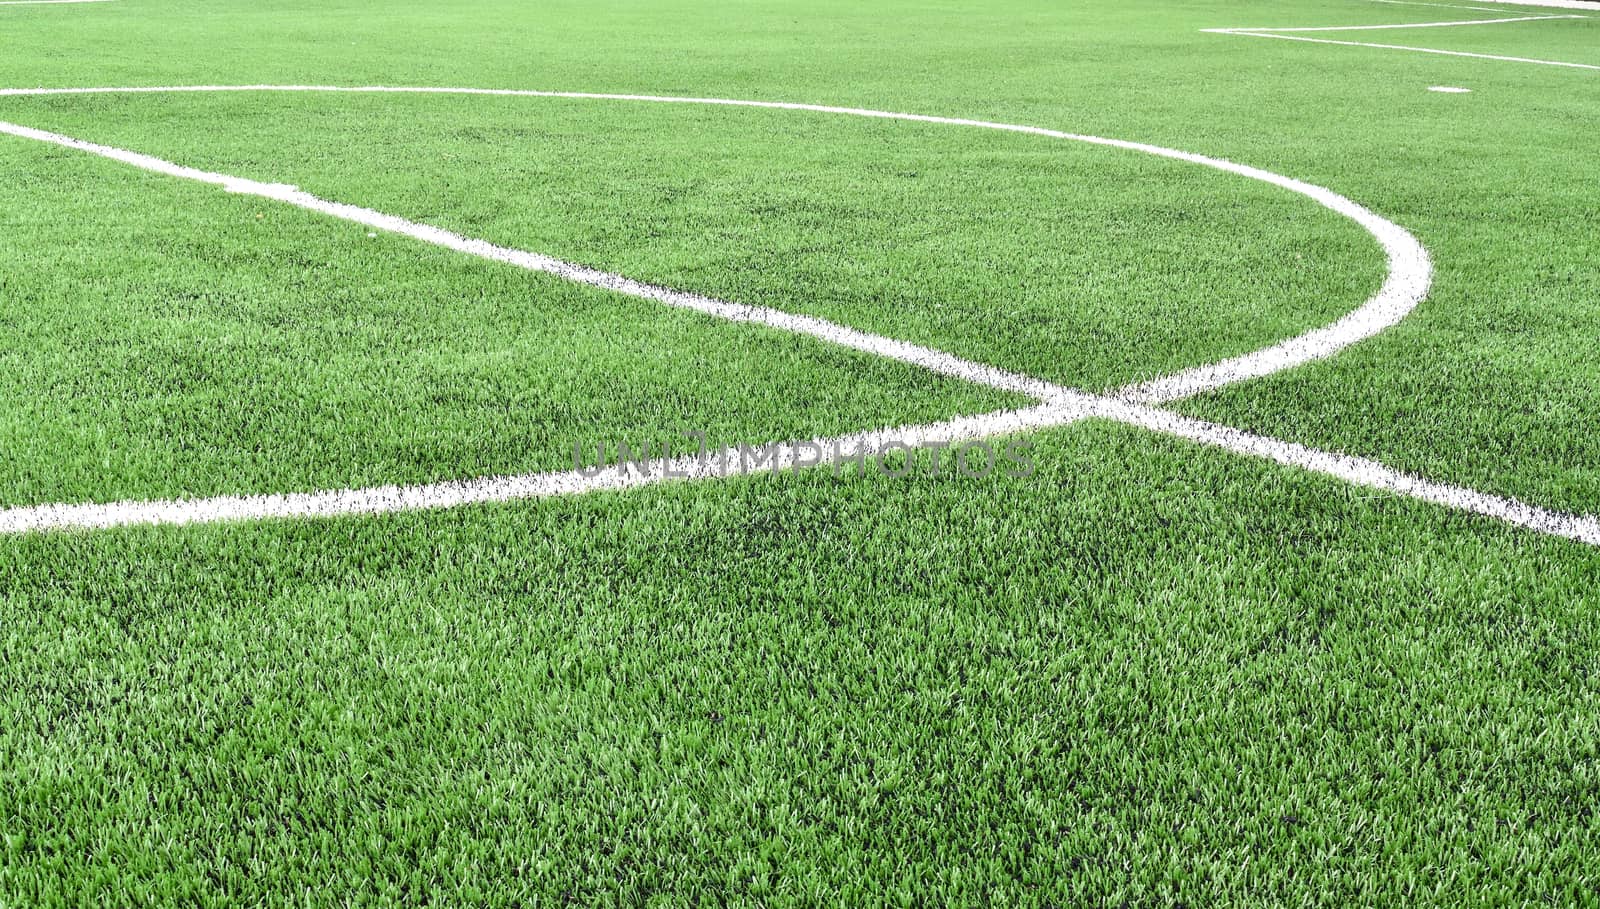 Center line on artificial grass football field.